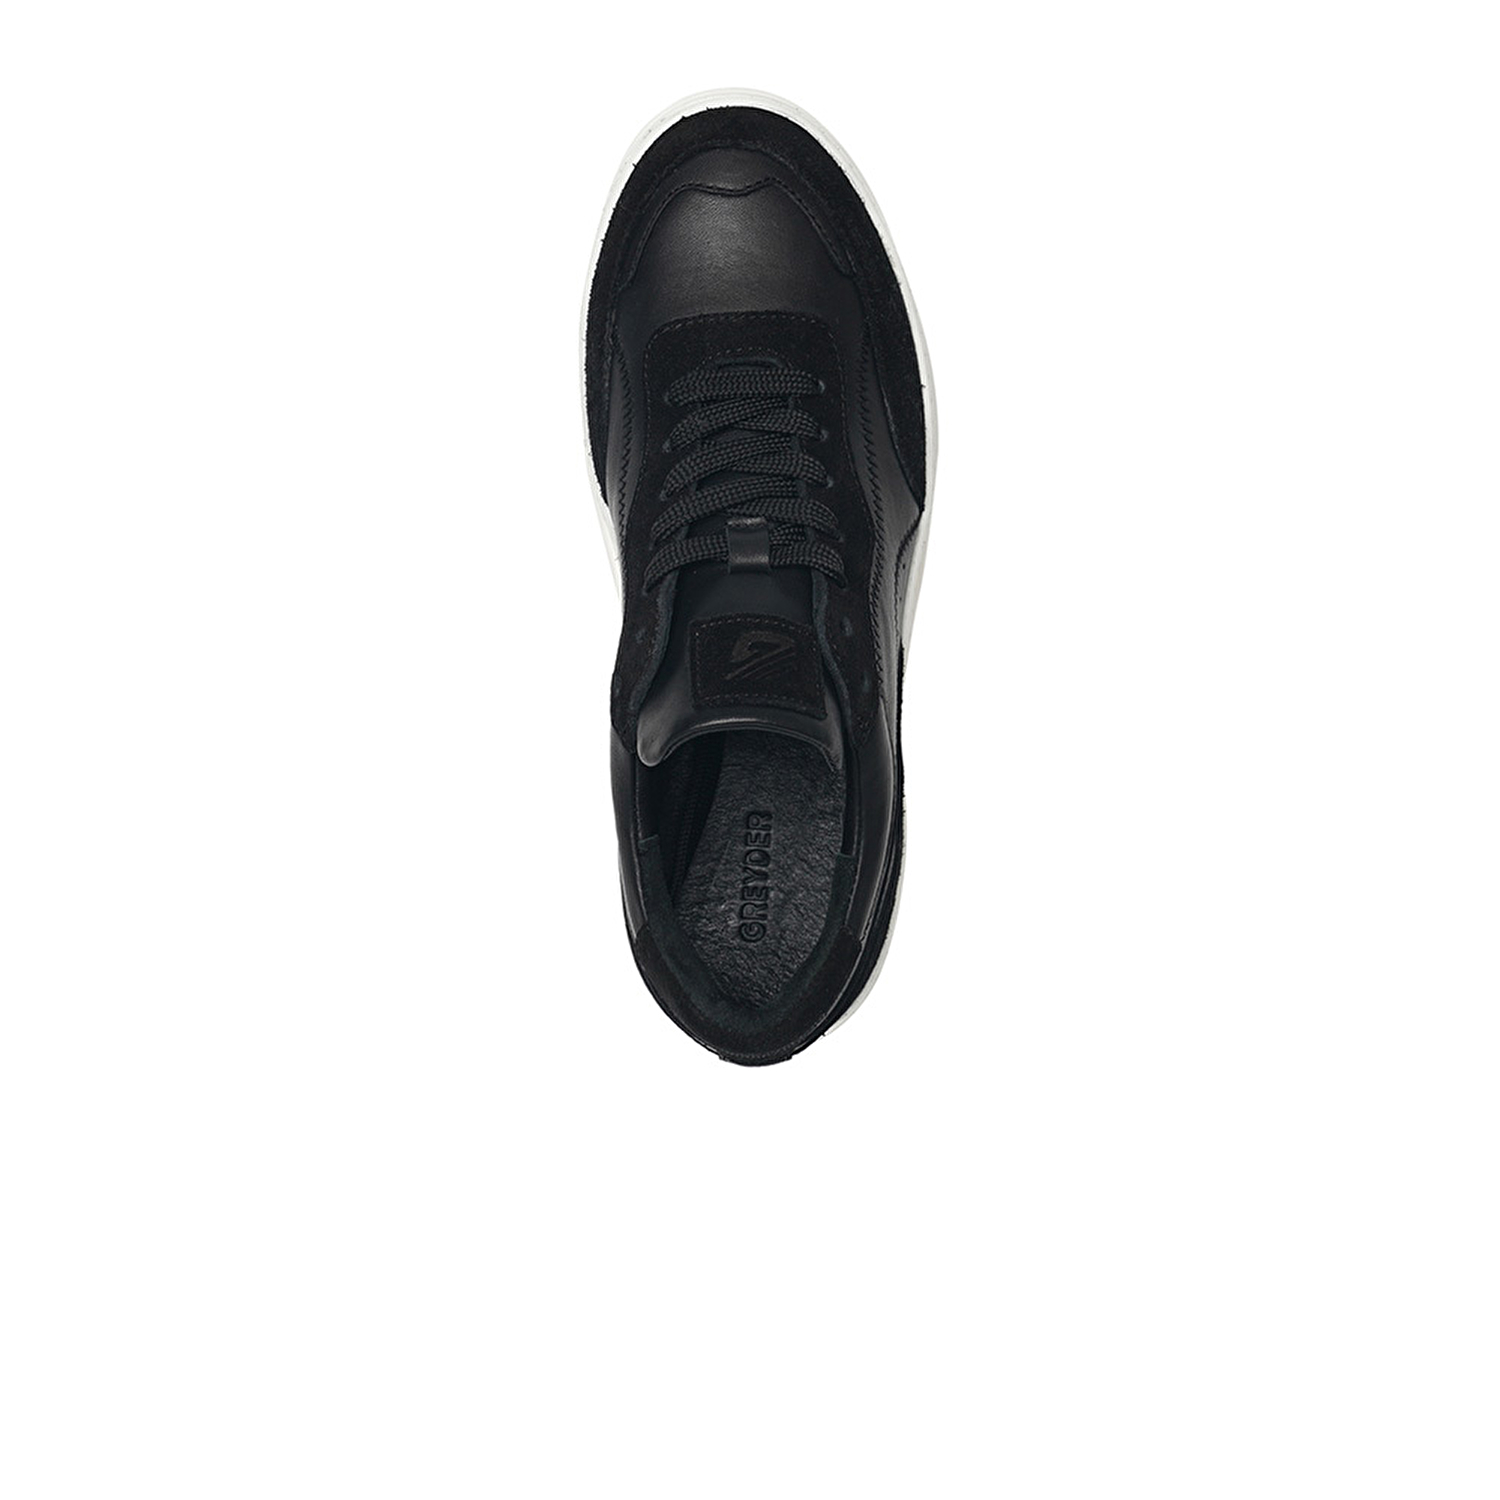 Kadın Siyah Hakiki Deri Sneaker Ayakkabı 3K2SA33071-3